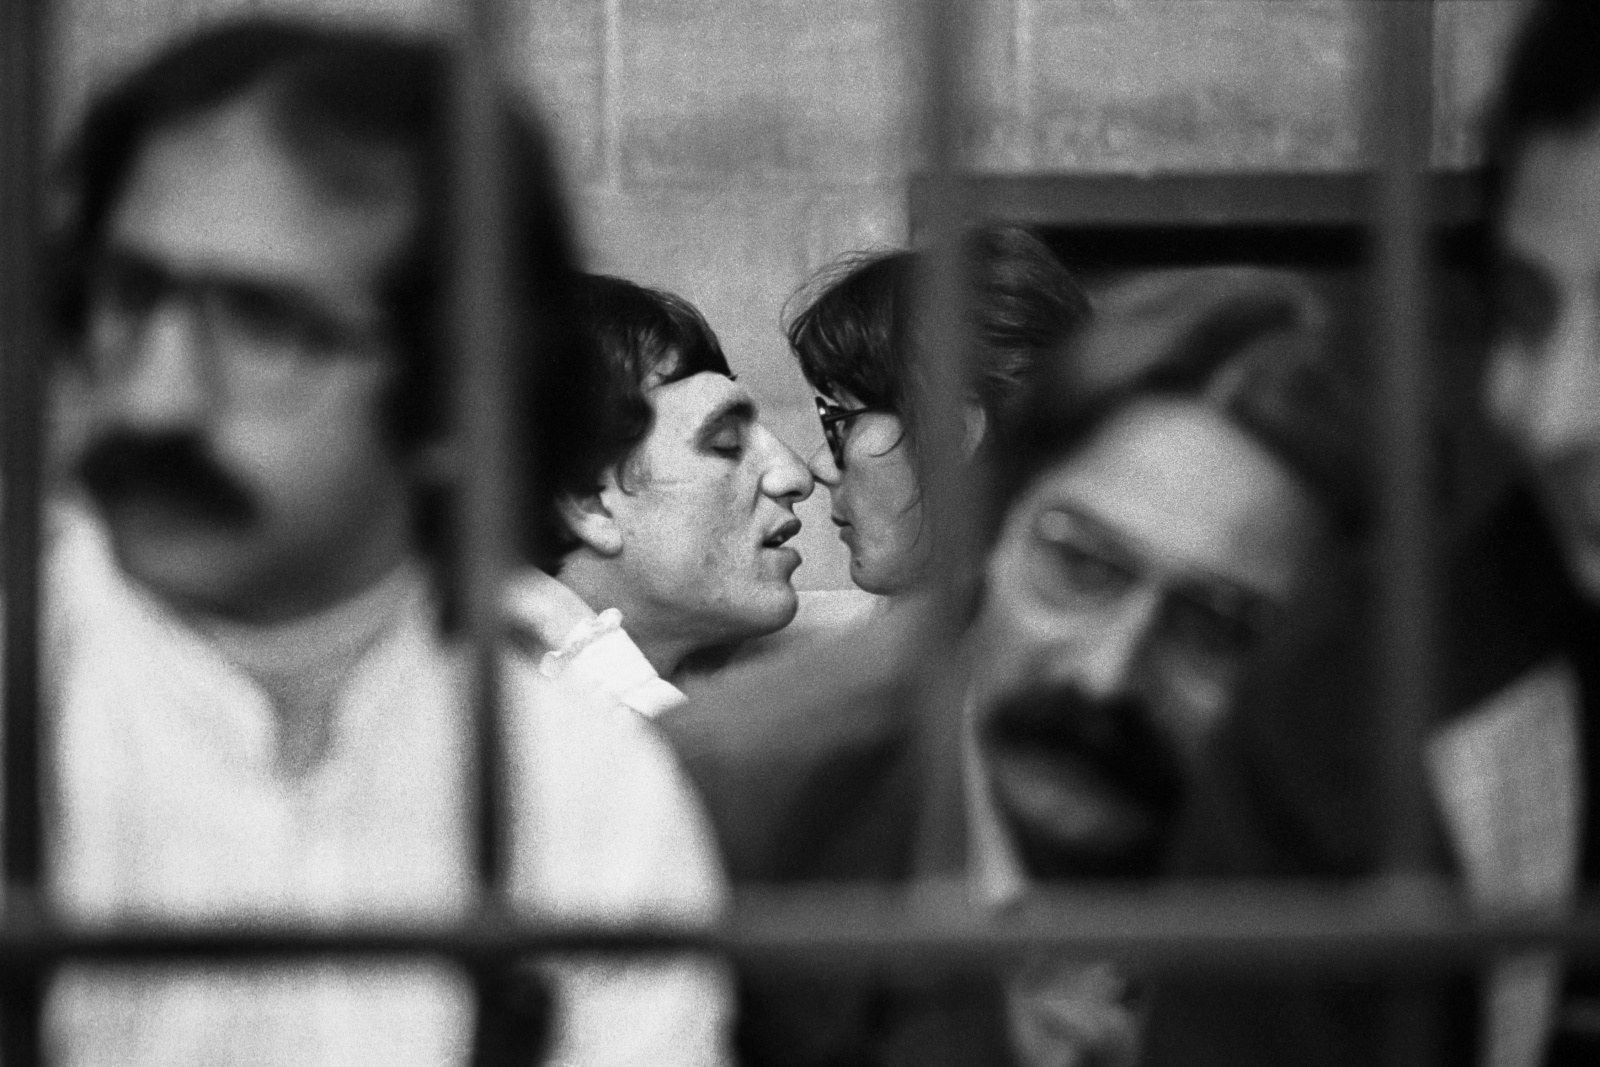 Raffaele Fiore, capo colonna torinese delle B.R, con la compagna Angela Vai al processo per terrorismo nel bunker del carcere le Vallette di Torino per i reati commessi dal 1973 al 1980